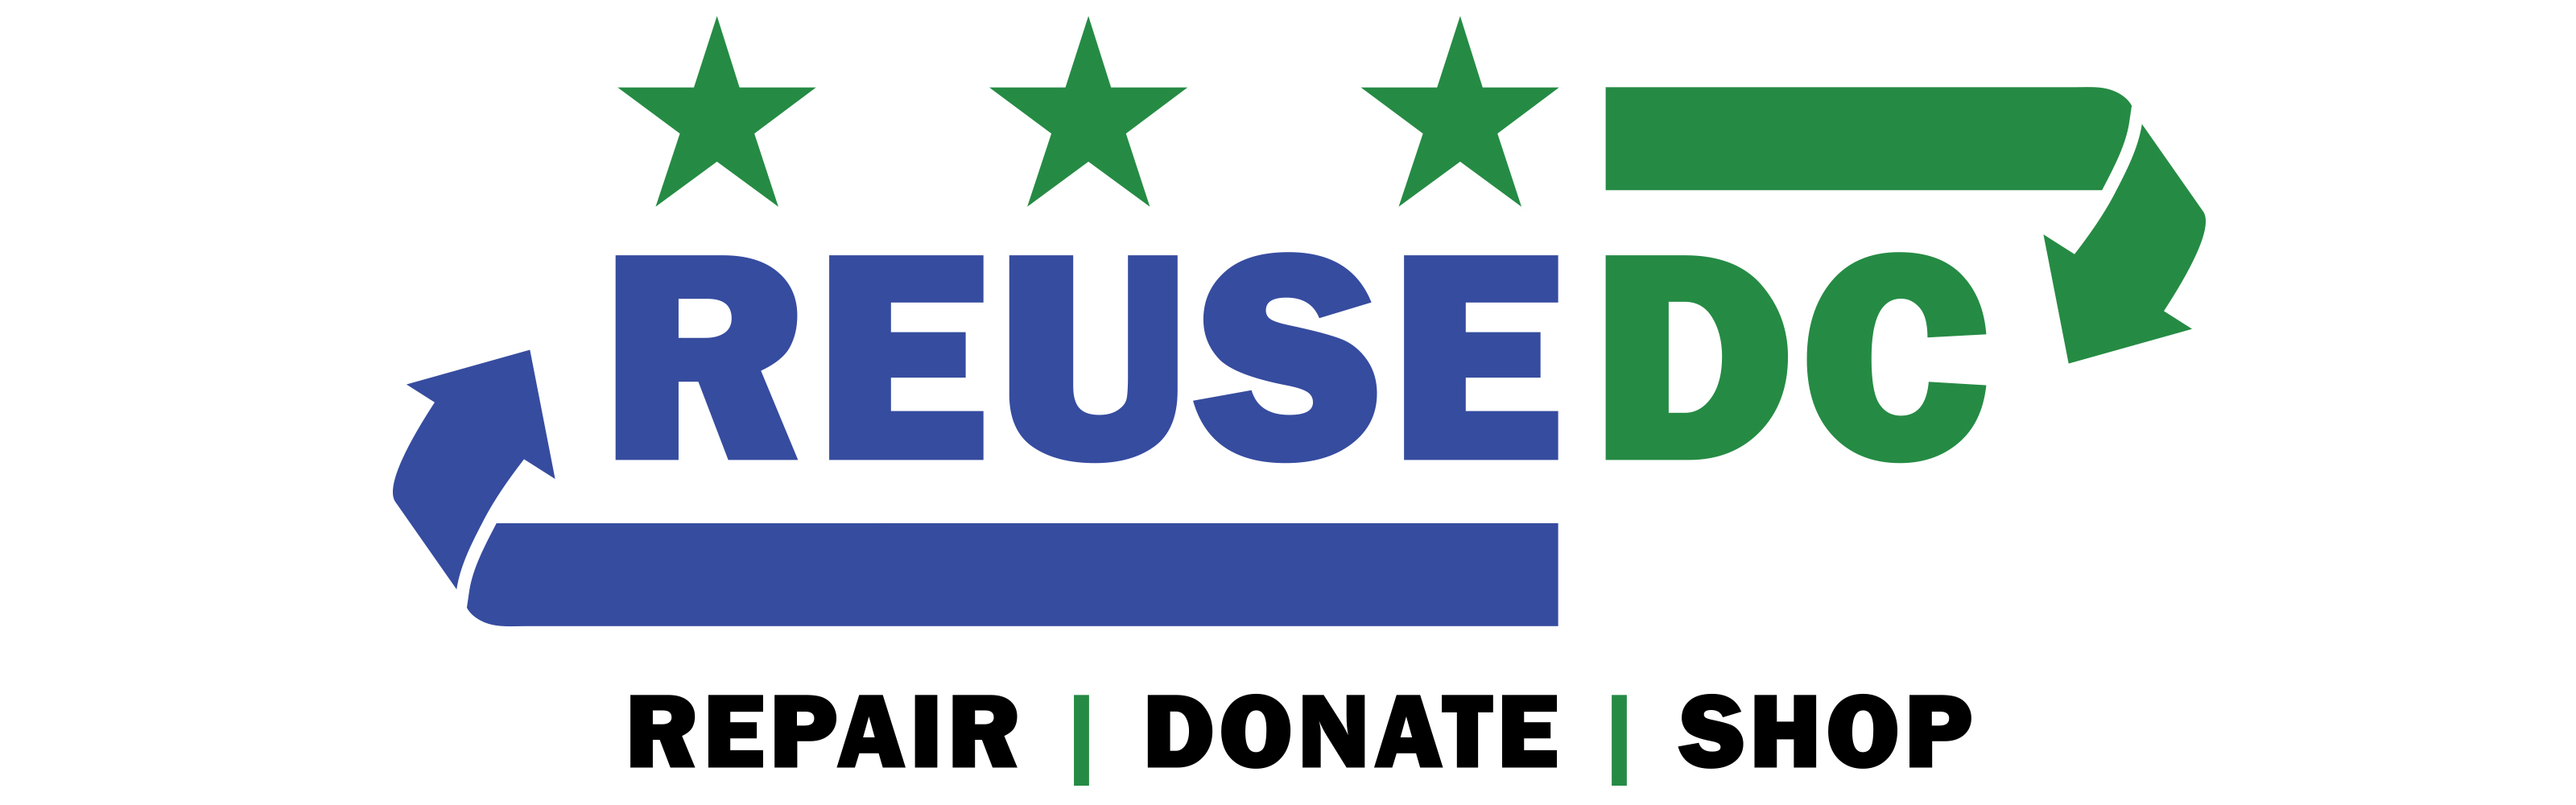 Reuse DC - Repair, Donate, Shop